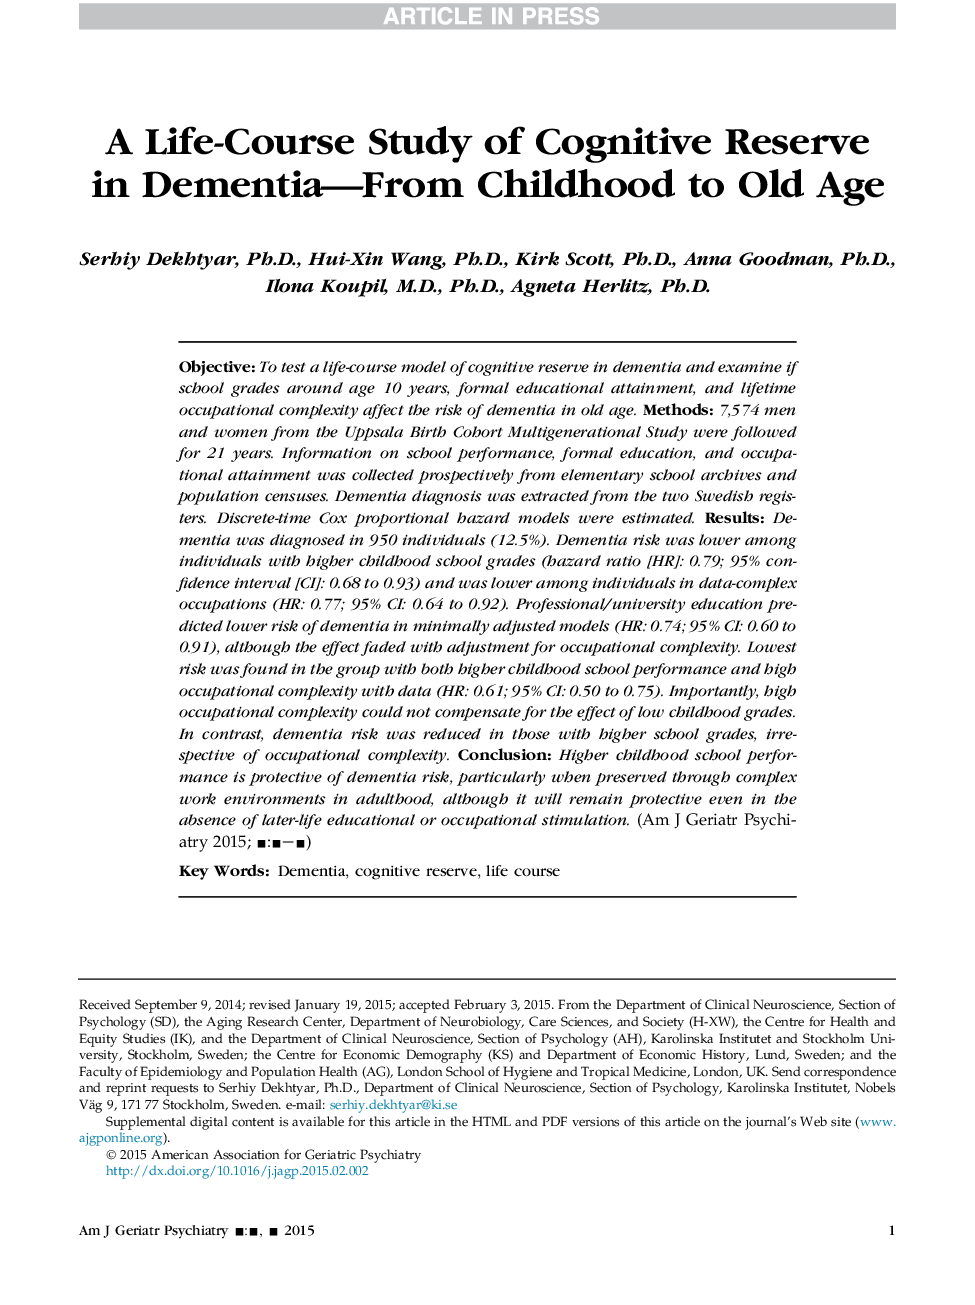 یک مطالعه طول عمر در مورد ذخایر شناختی در دموکراسی - از دوران کودکی تا پیری 